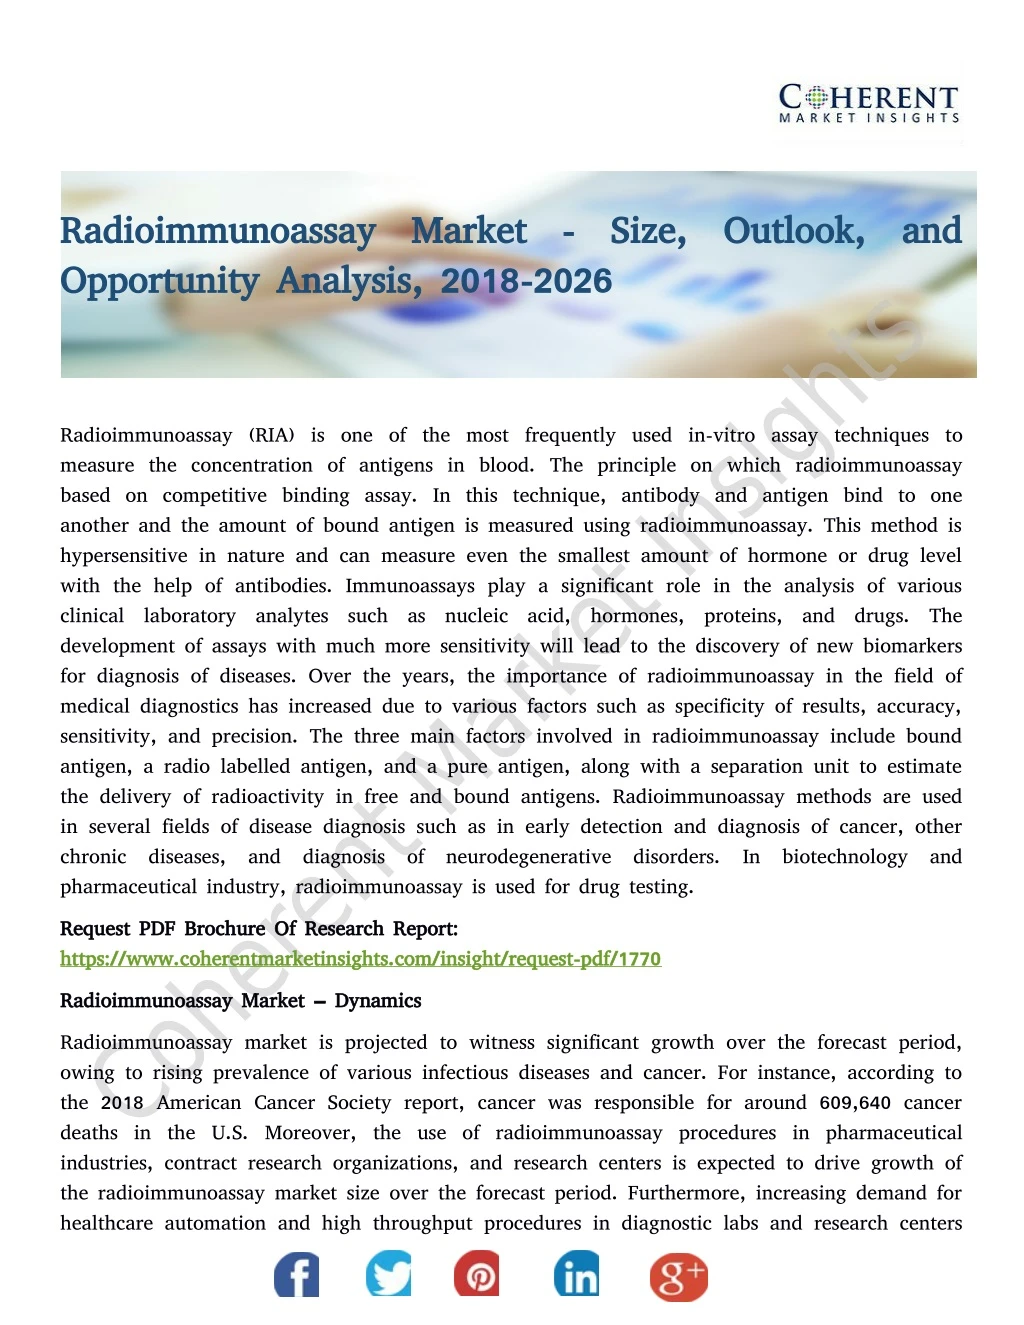 radioimmunoassay market size outlook